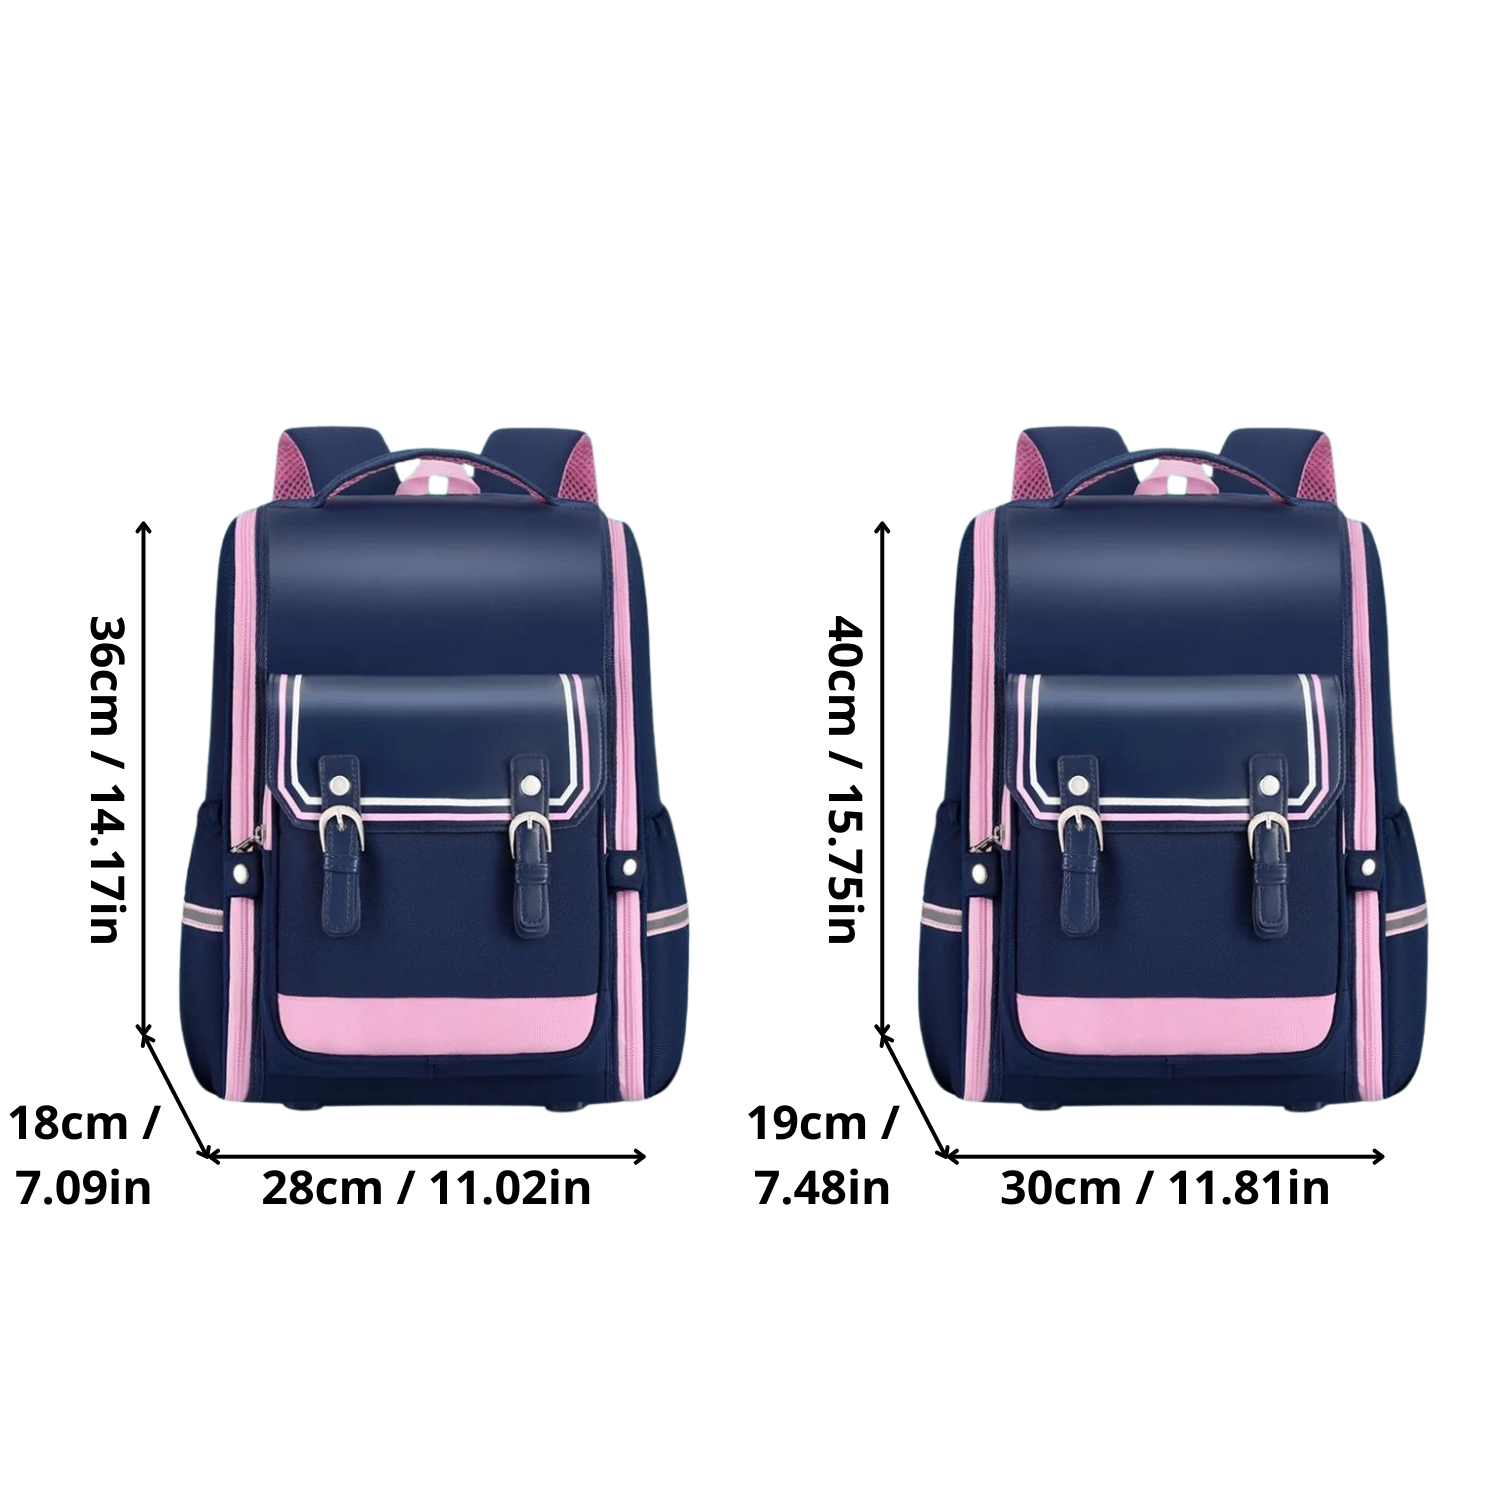 Durable Orthopedic School Backpack for Children